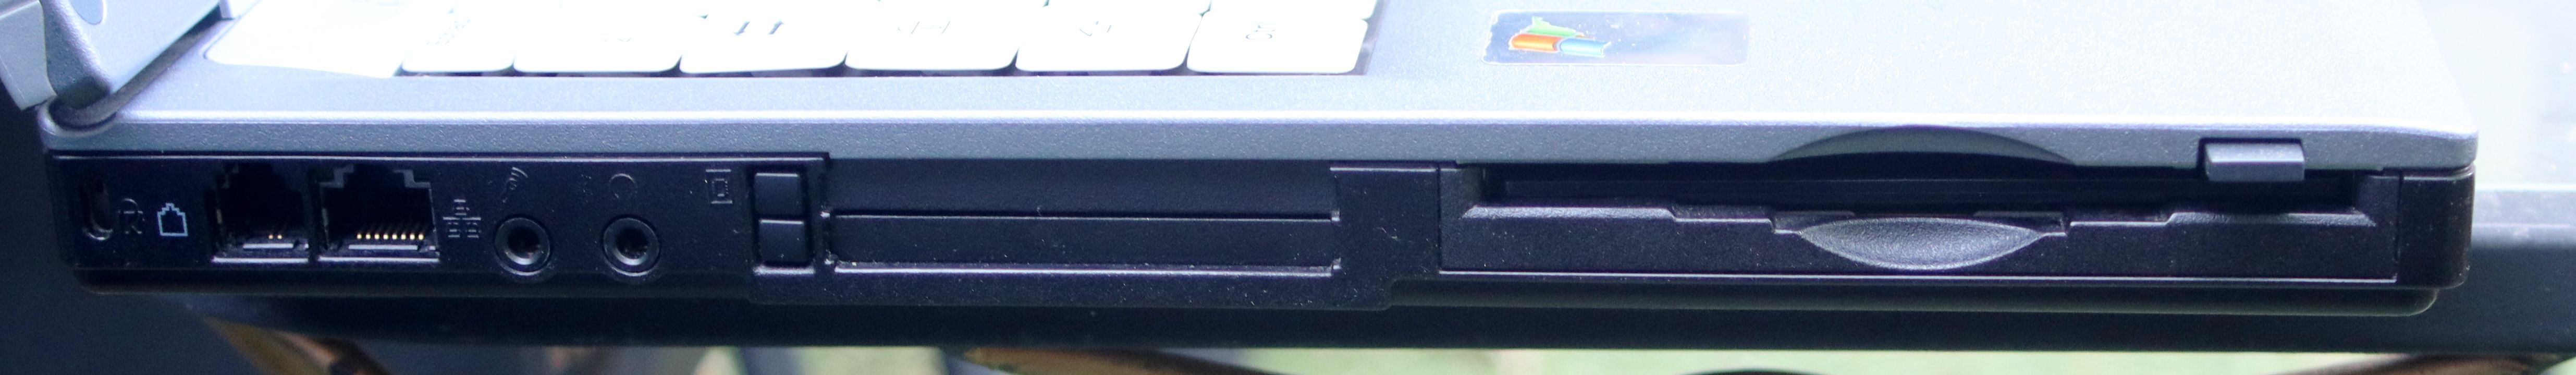 [RECH/ECH] Vieux PC portable W98/XP avec Floppy Fbvl